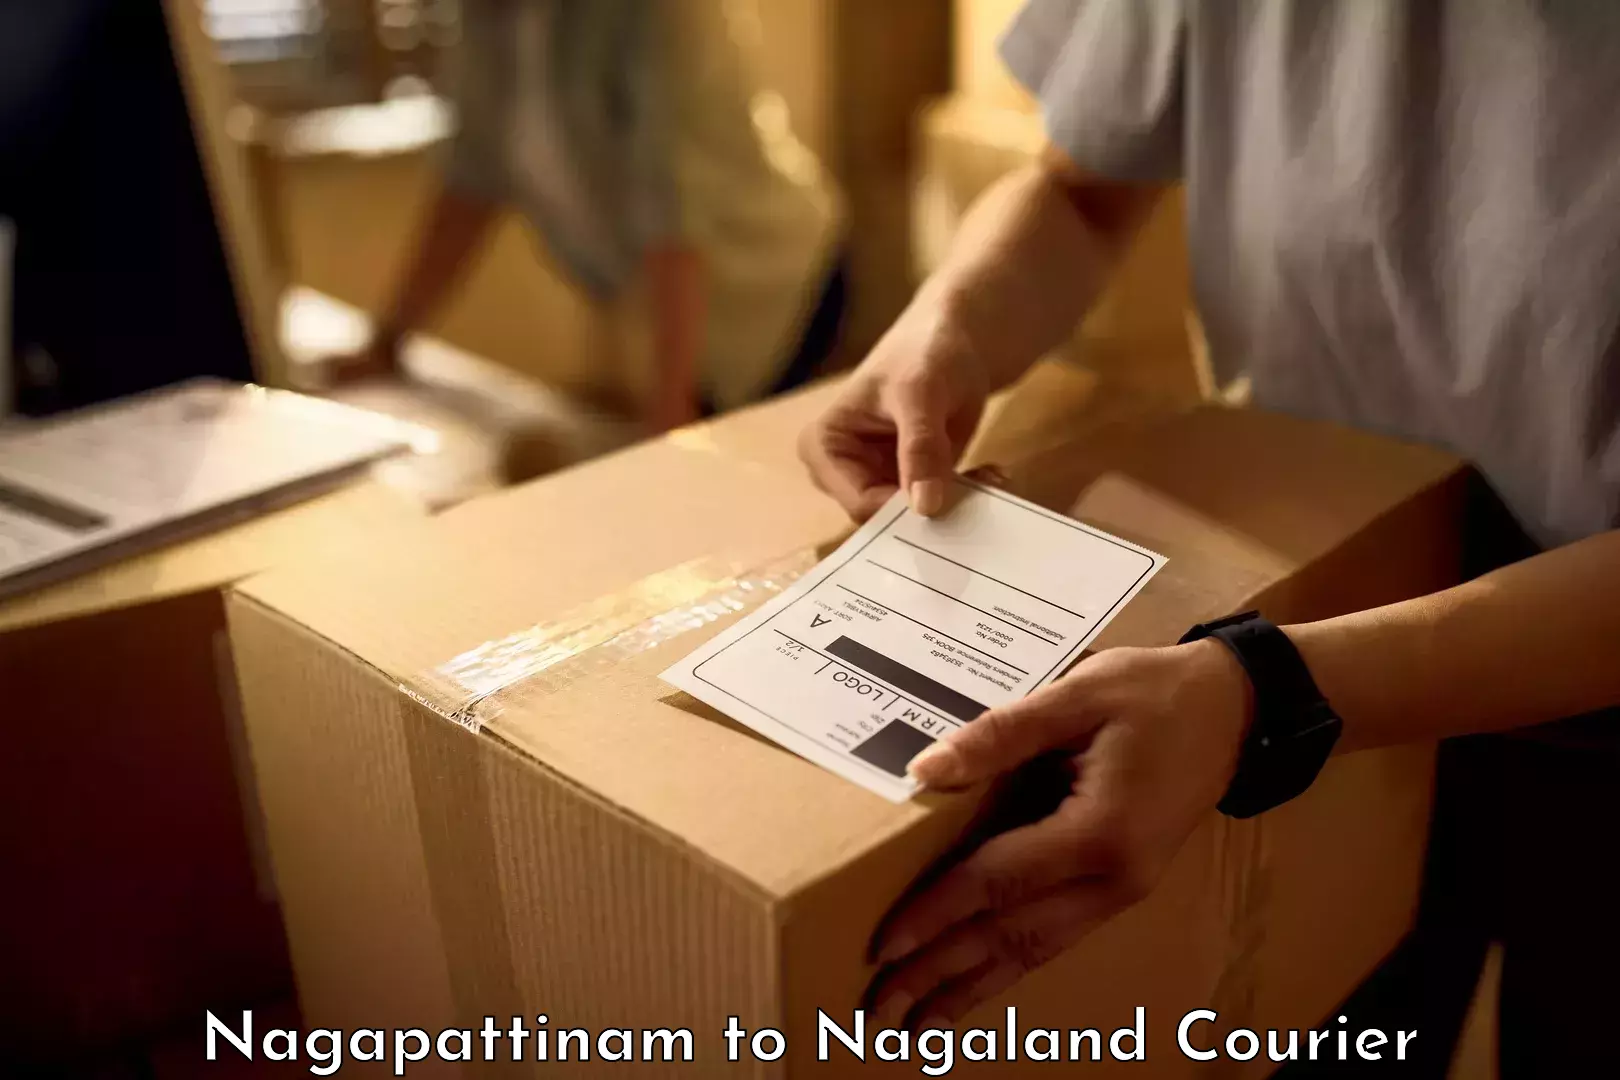 Baggage courier strategy Nagapattinam to Nagaland